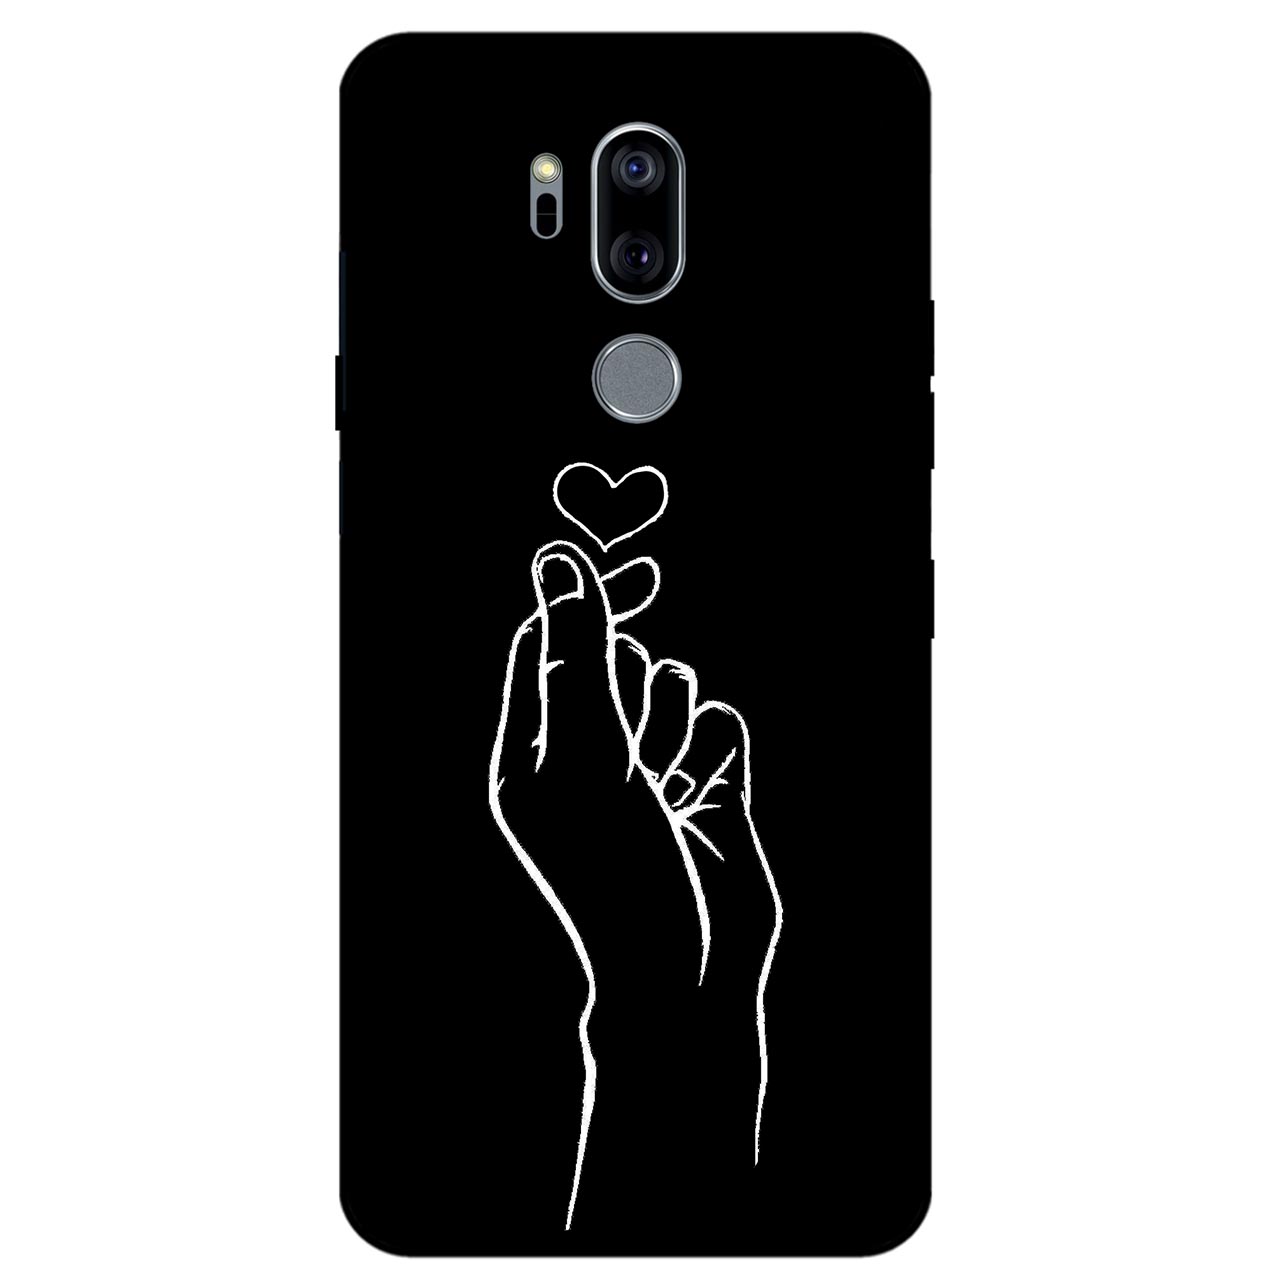 کاور مگافون طرح قلب مدل 7769 مناسب برای گوشی موبایل ال جی G7 thinQ 